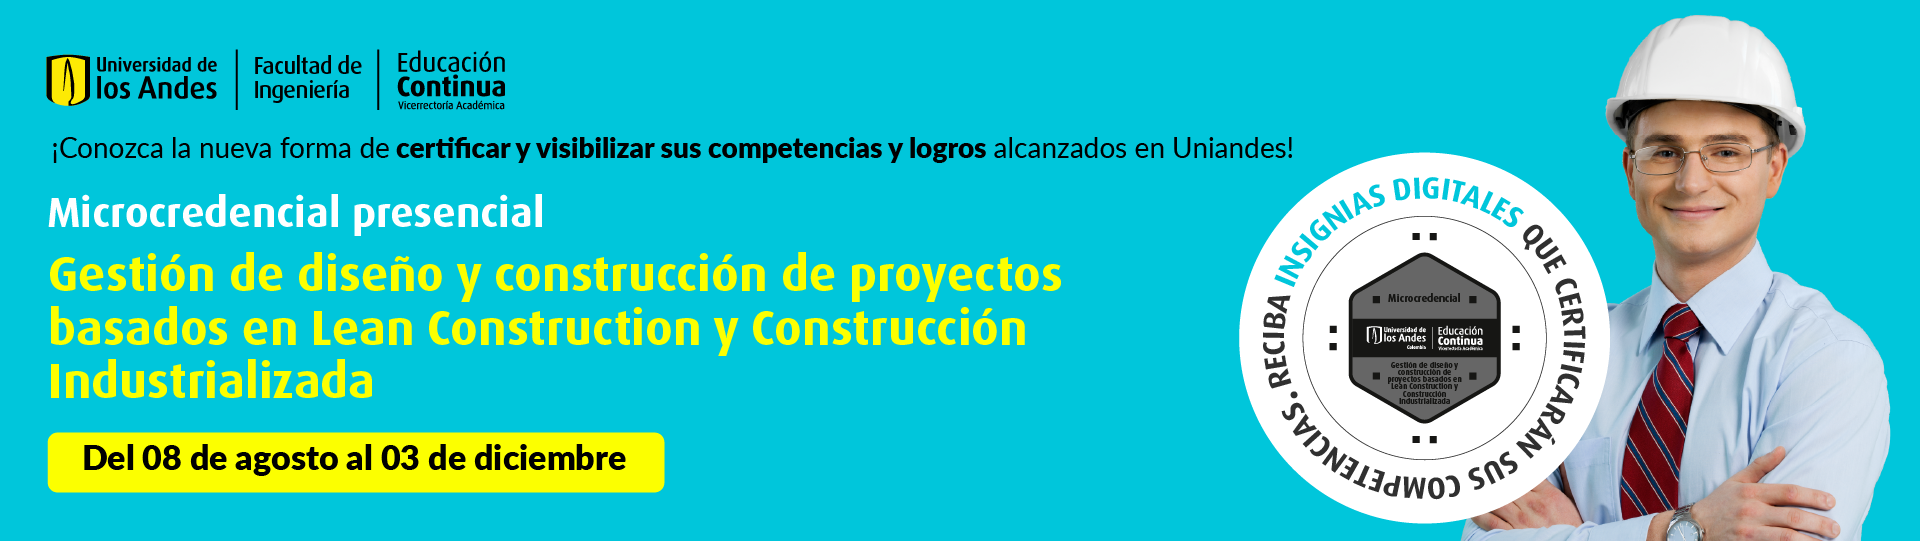 Gestión de diseño y construcción de proyectos basados en Lean Construction y Construcción Industrializada